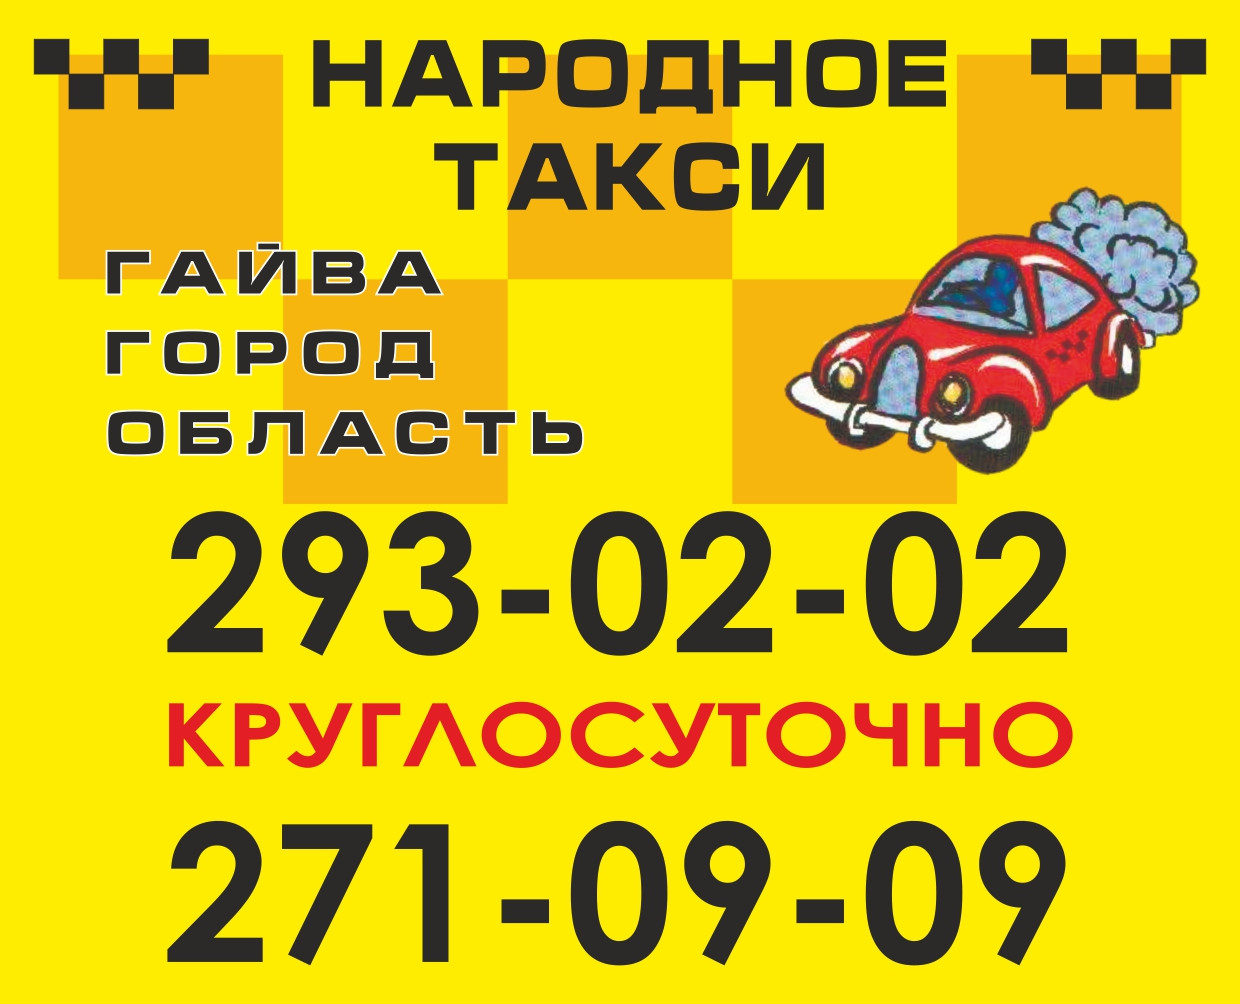 Такси мурманск номера телефоны. Номер такси. Народное такси. Такси Пермь номера. Народное такси номер.